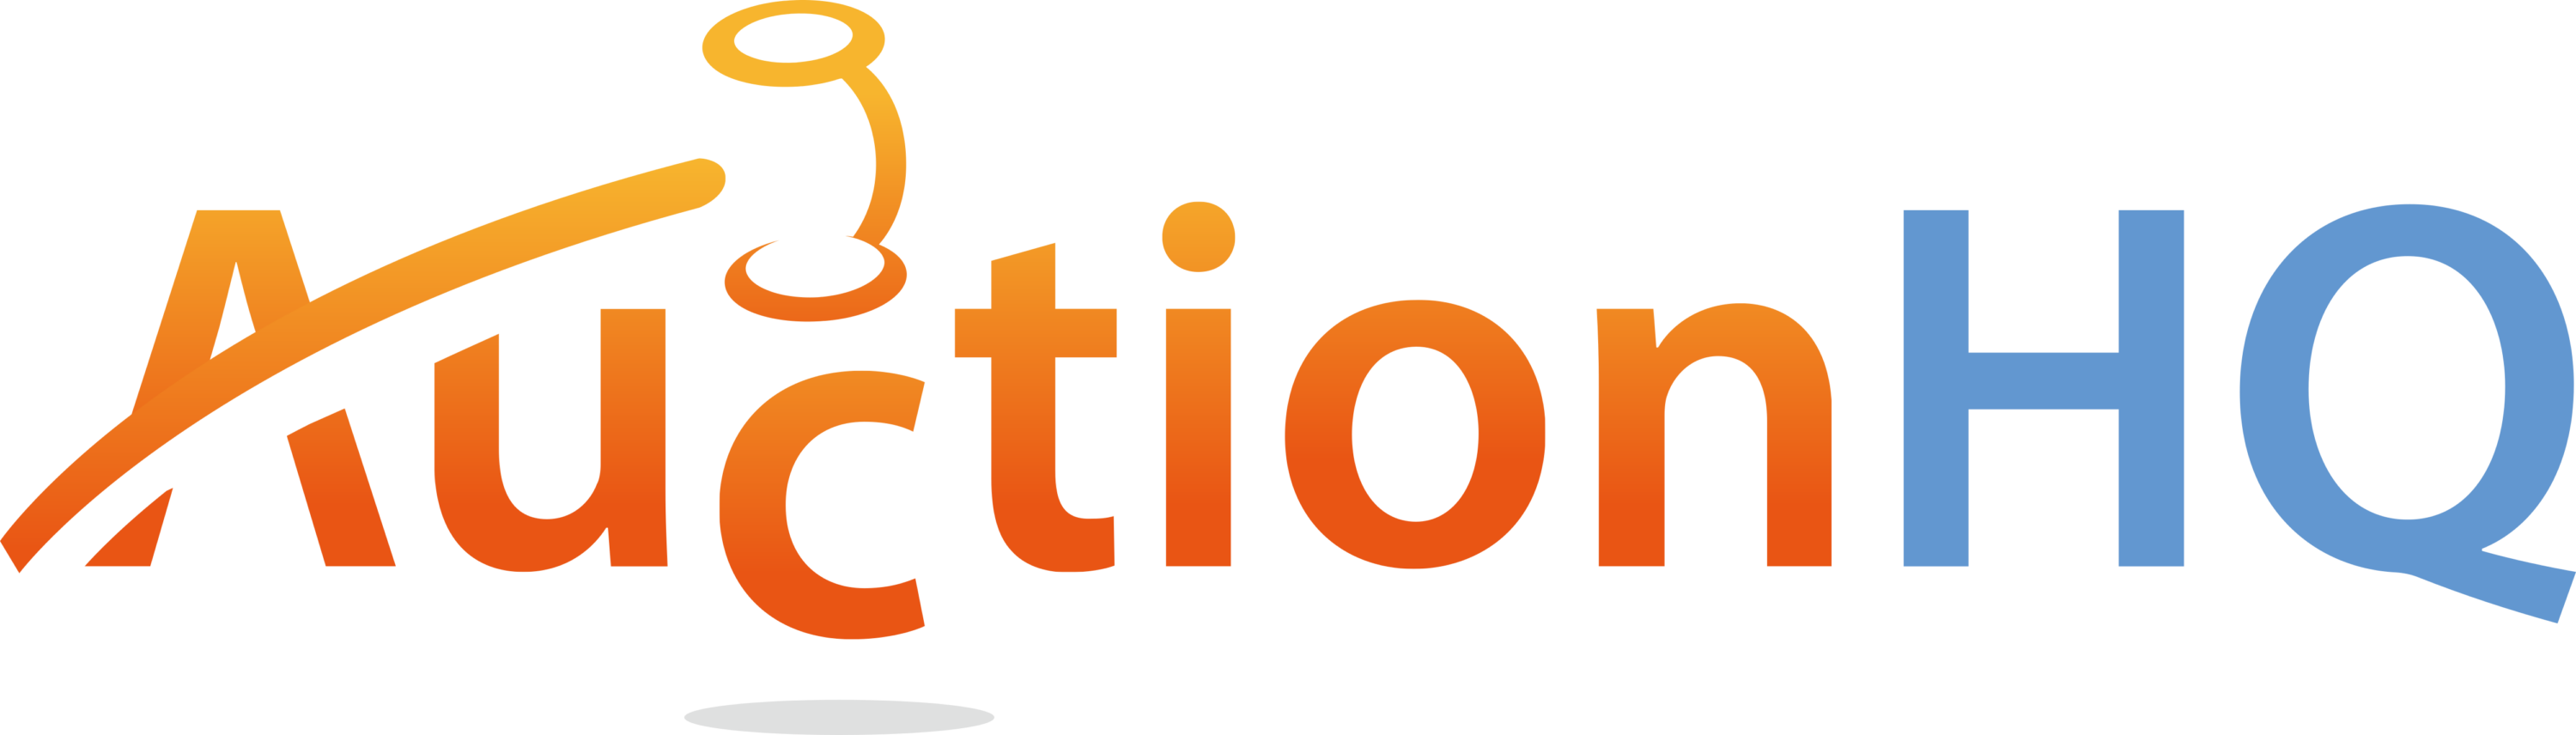 AuctionHQ Logo